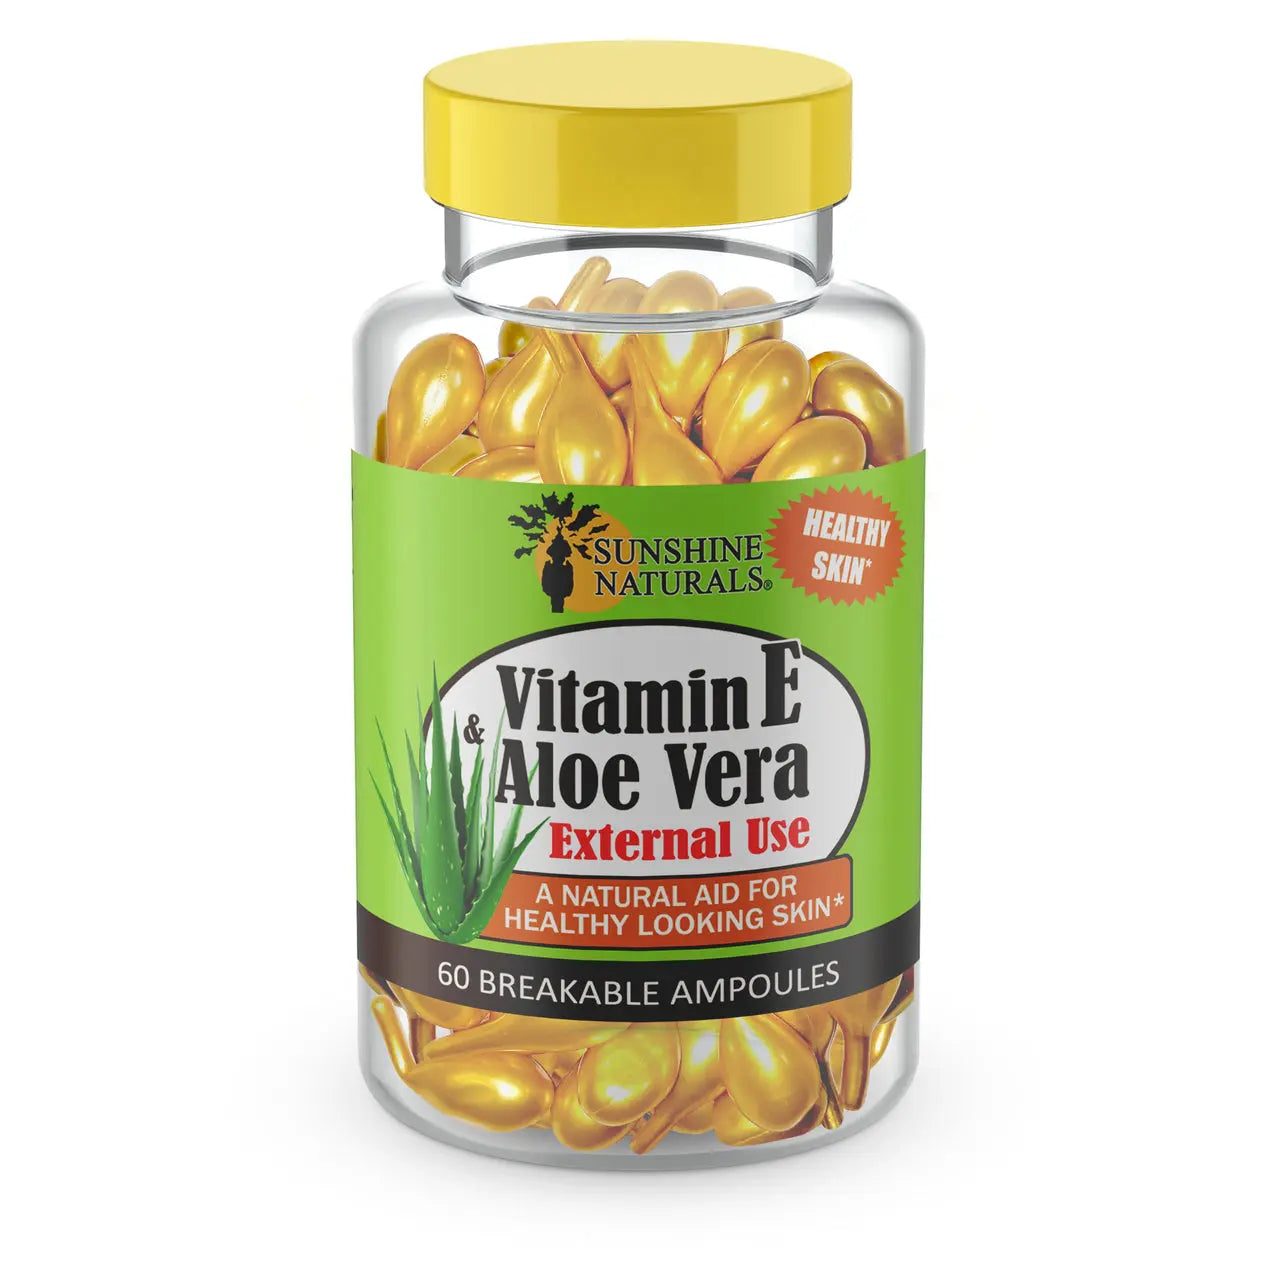 Vitamin E & Aloe Vera 60 breakable ampoules Sunshinenaturals